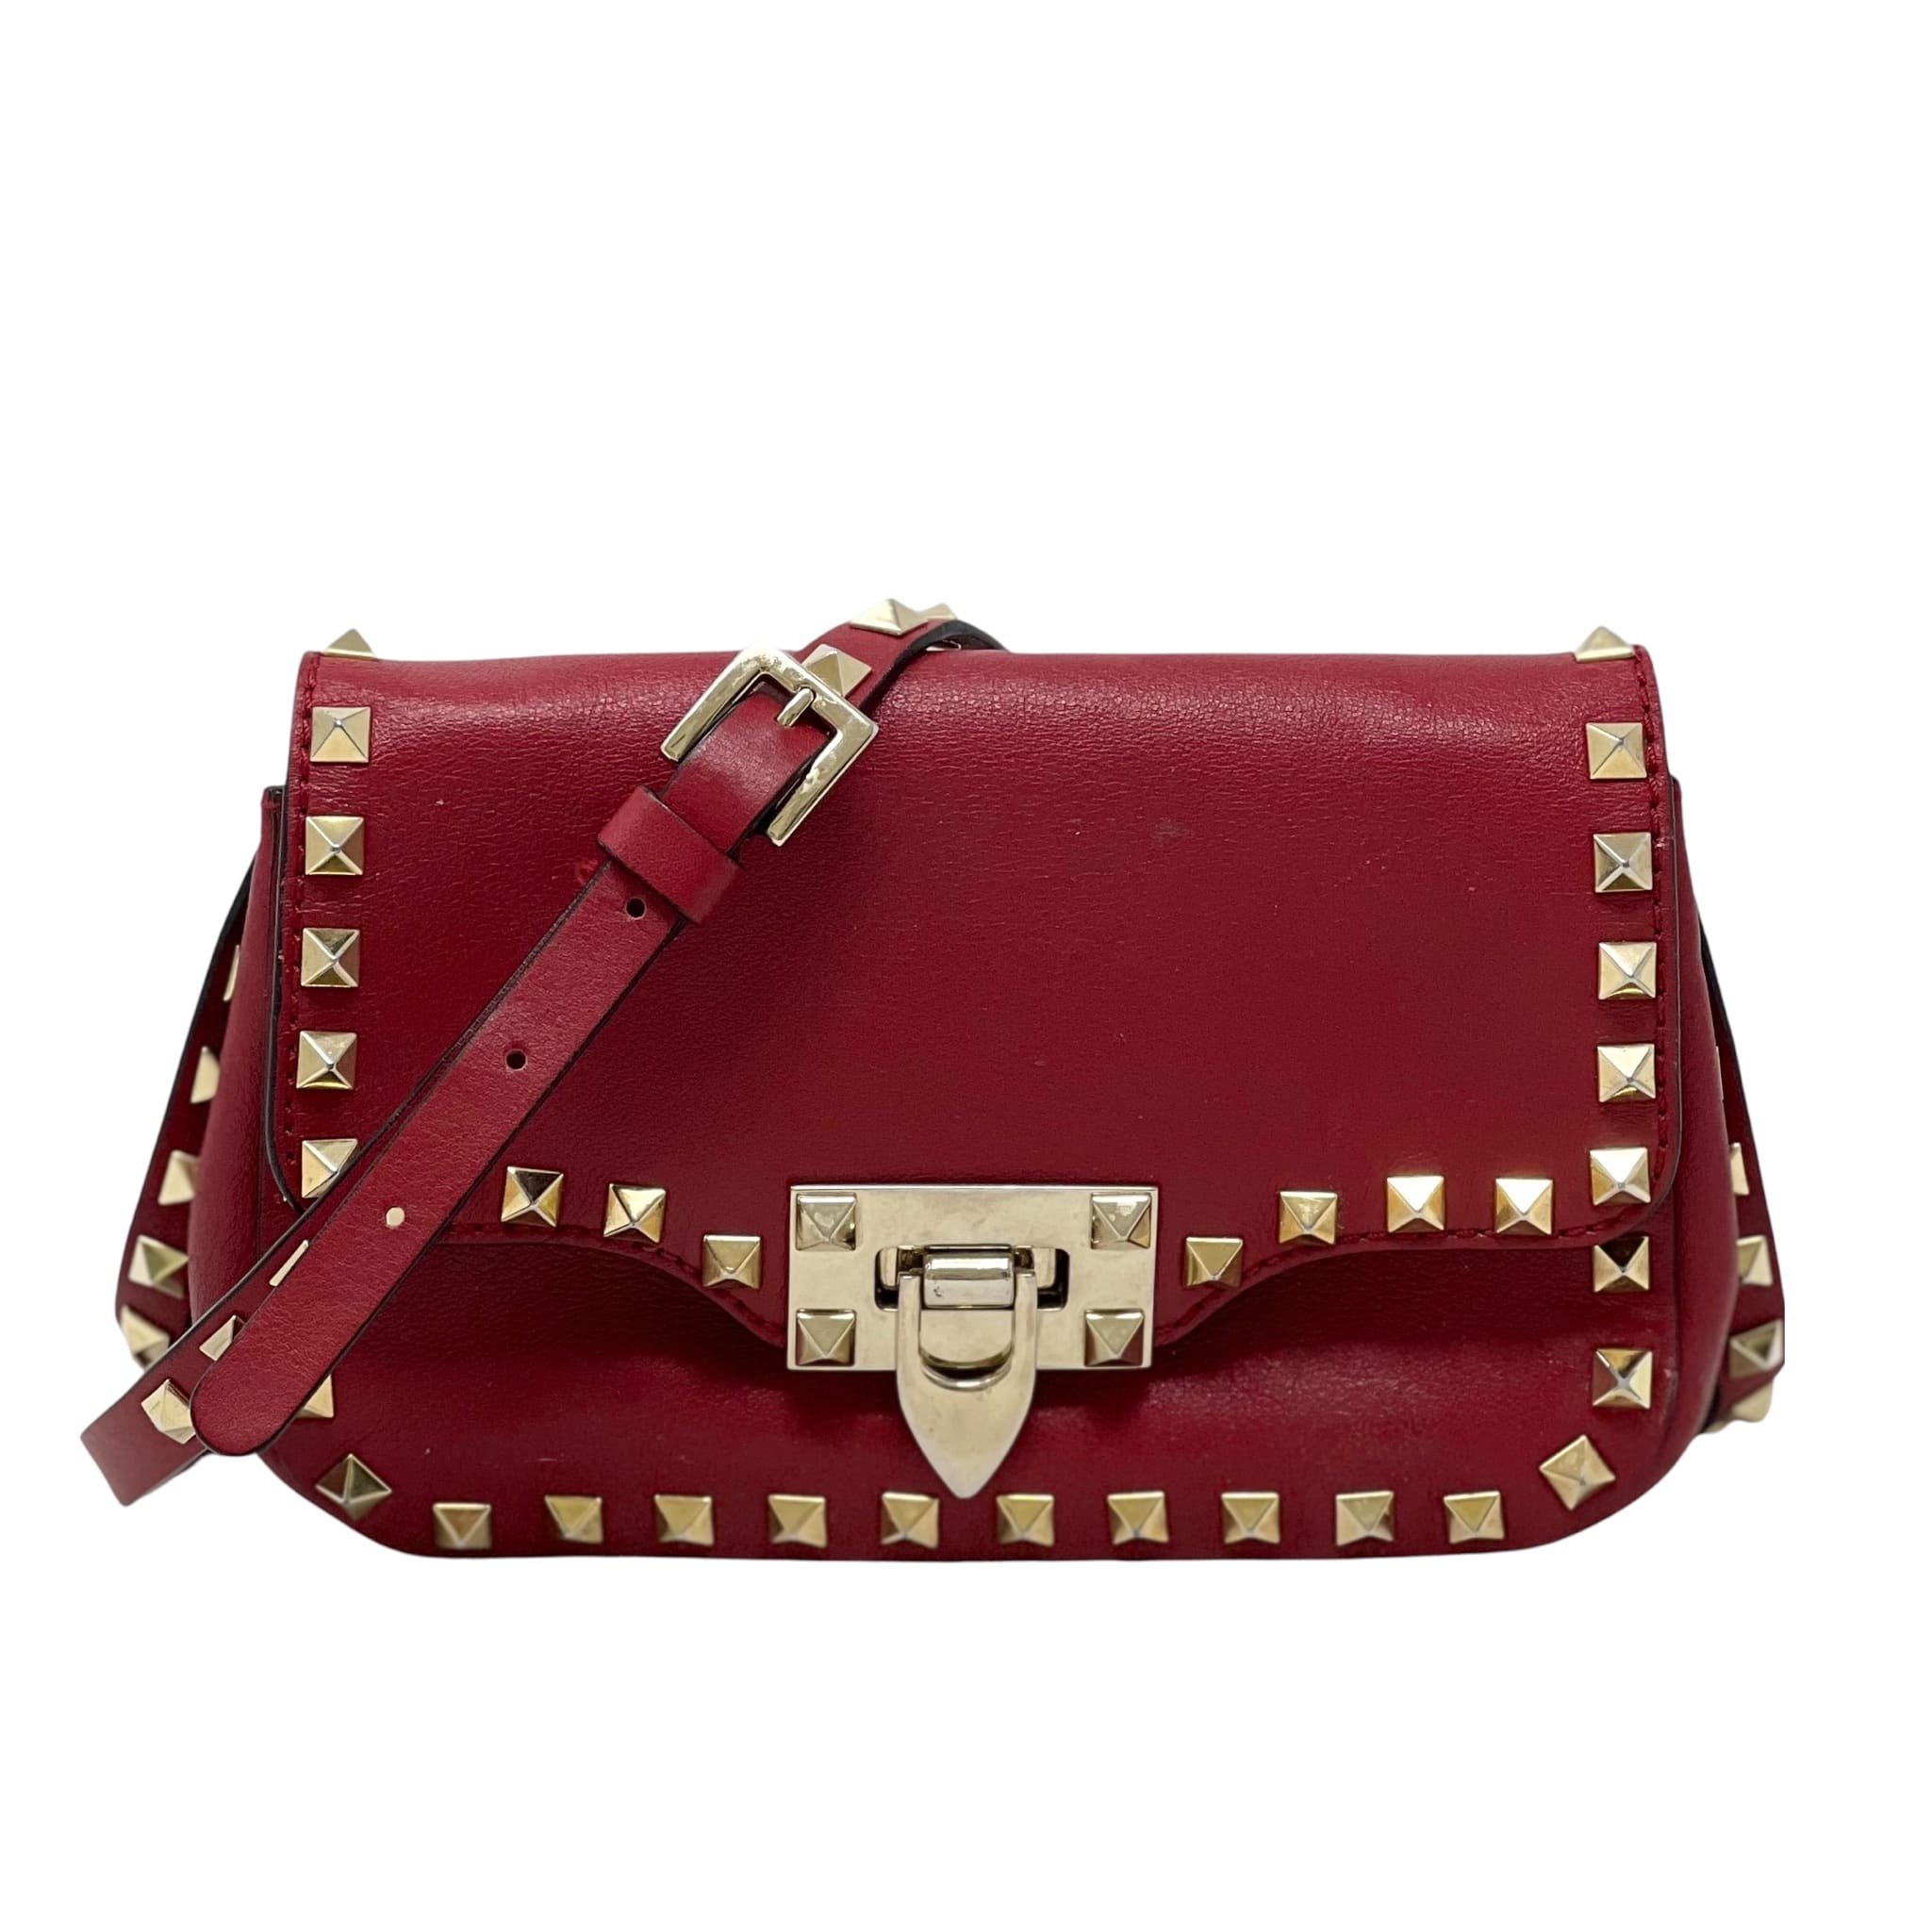 Valentino Red Mini Rockstud Bag